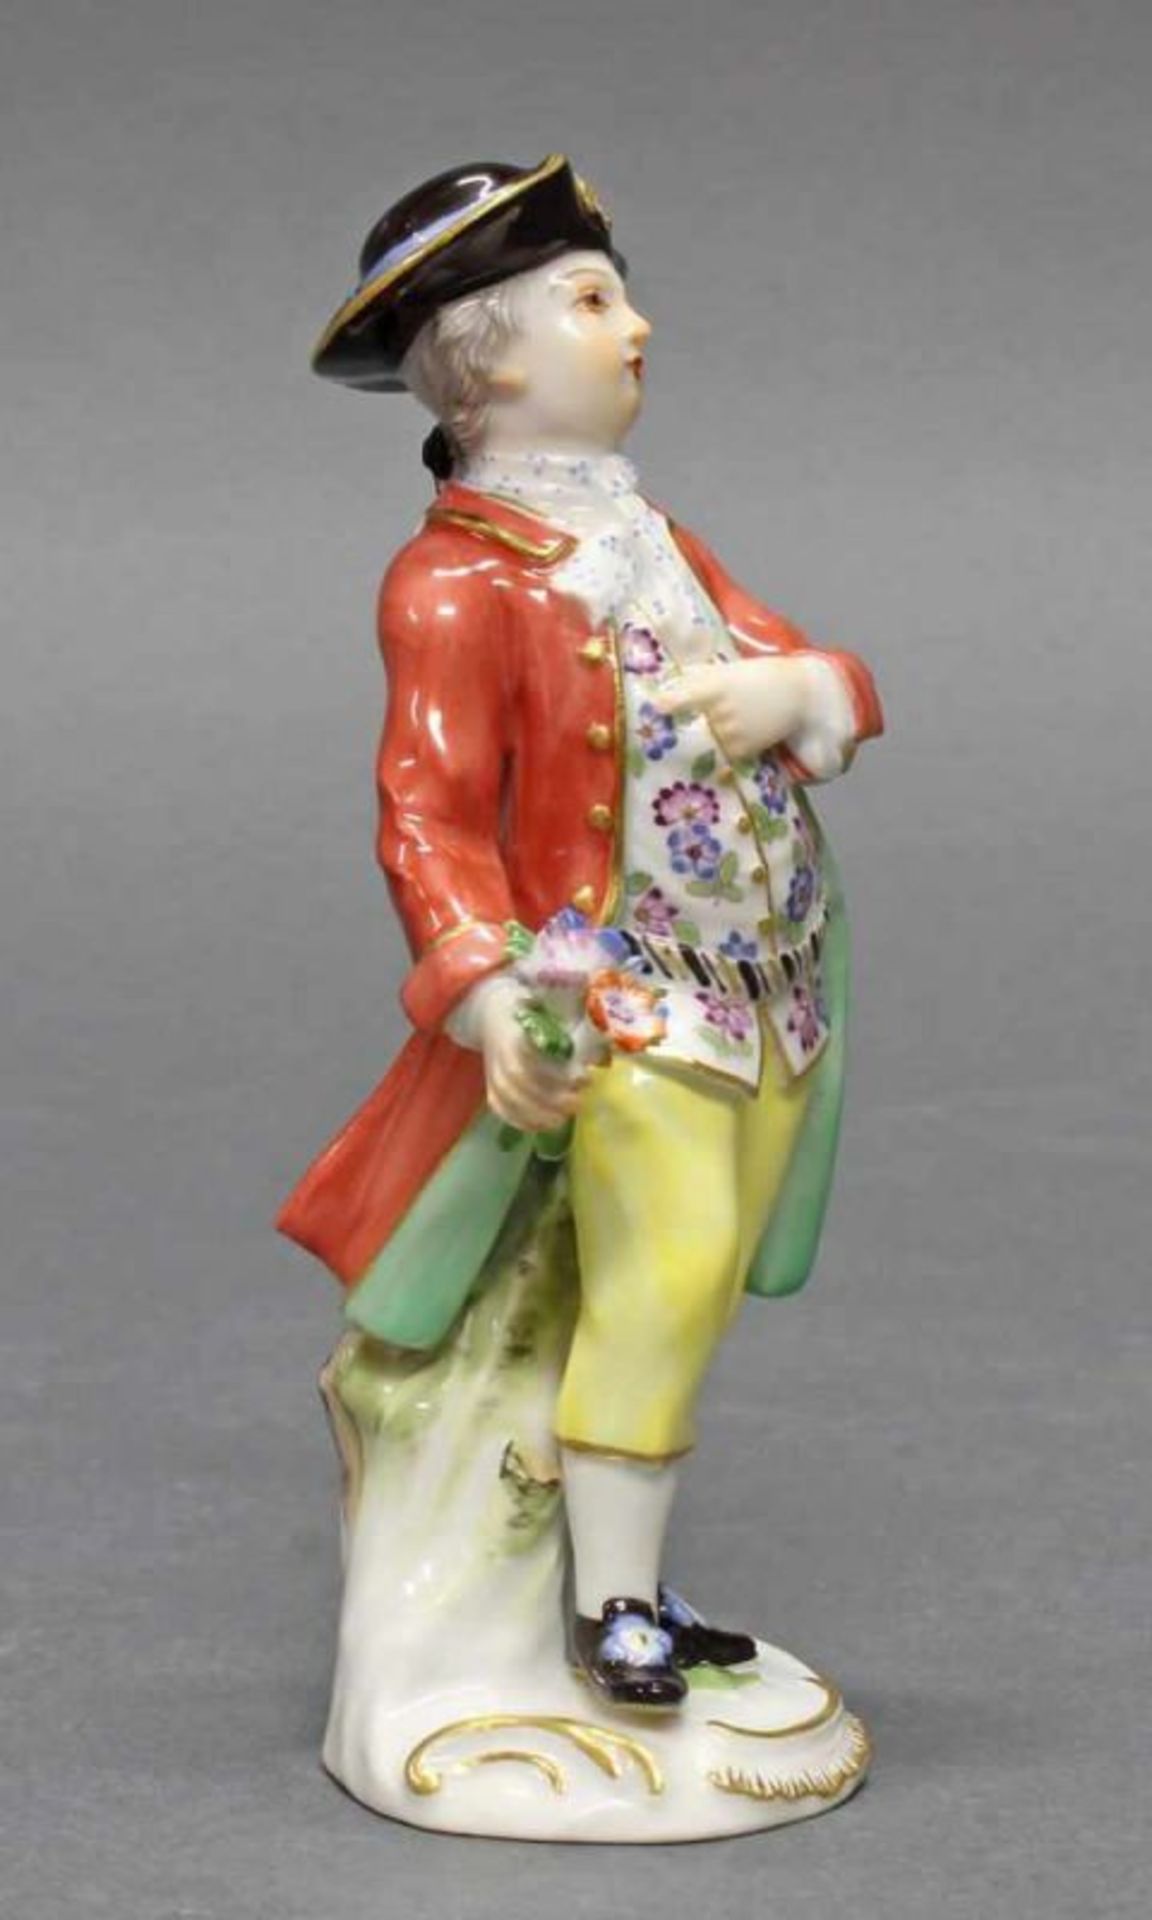 Porzellanfigur, "Kavalier mit Blumenstrauß", Meissen, Schwertermarke, 1. Wahl, Modellnummer 60372, - Image 2 of 4